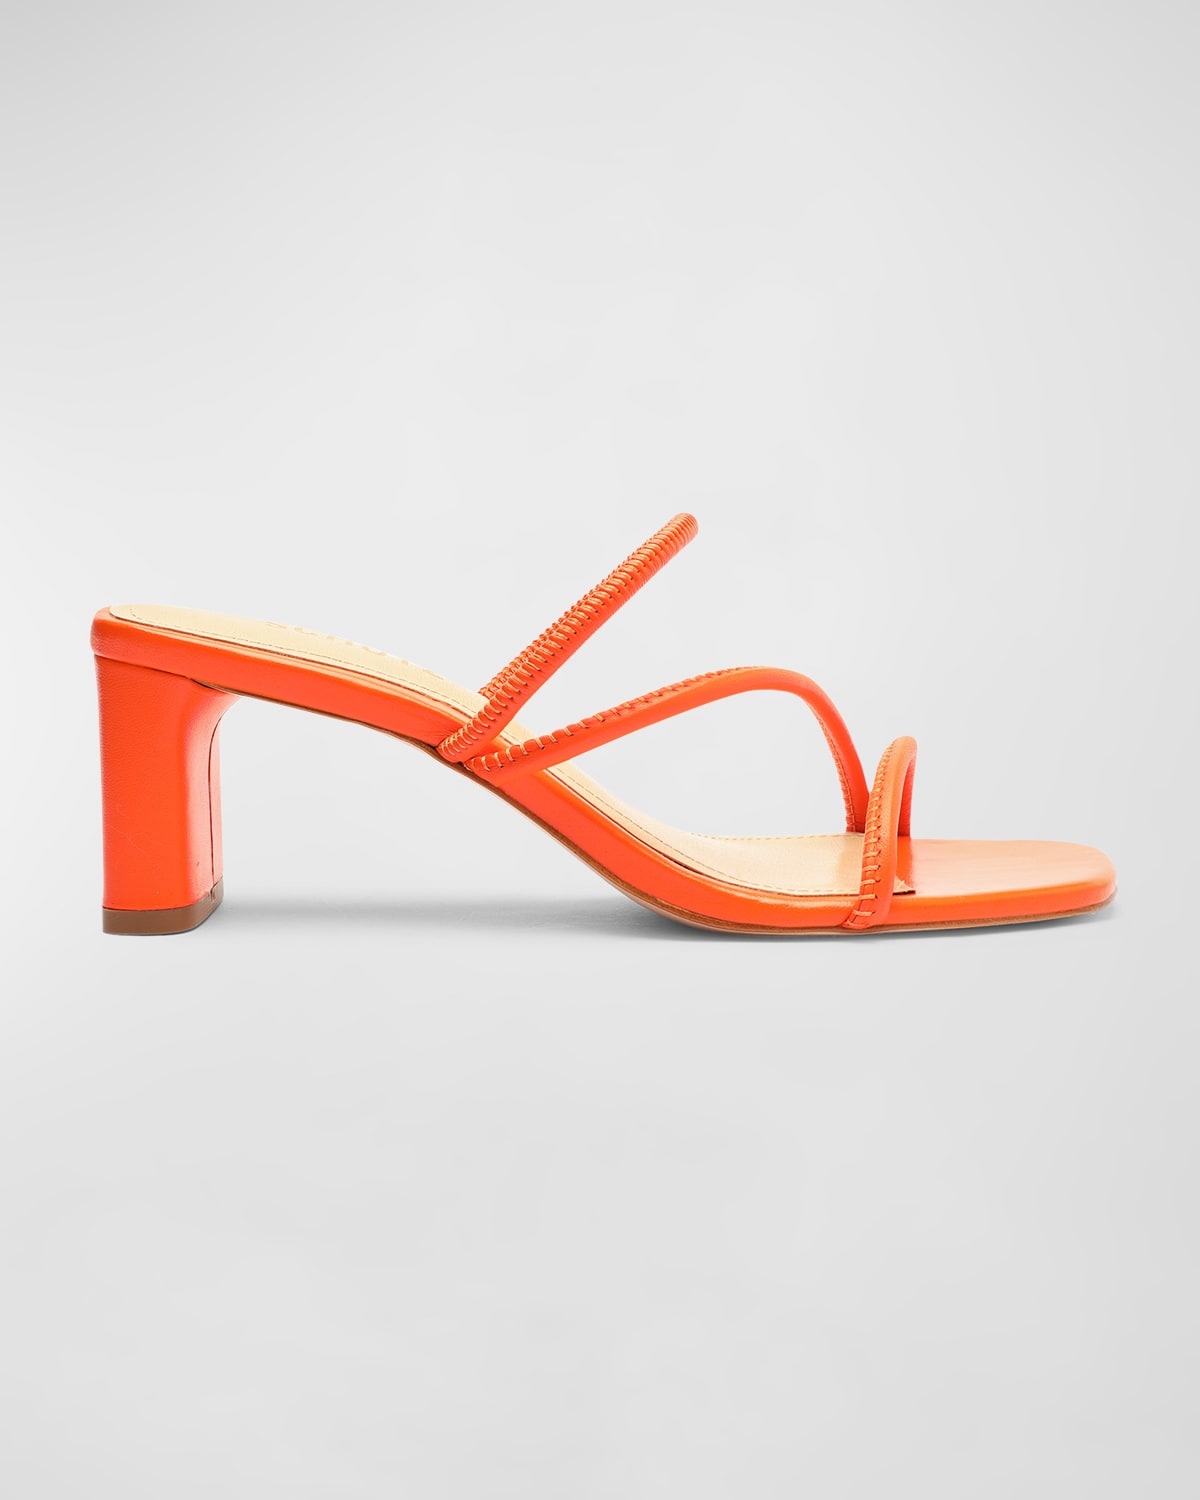 Schutz Chessie Leather Three-band Slide Sandals In Flame Orange